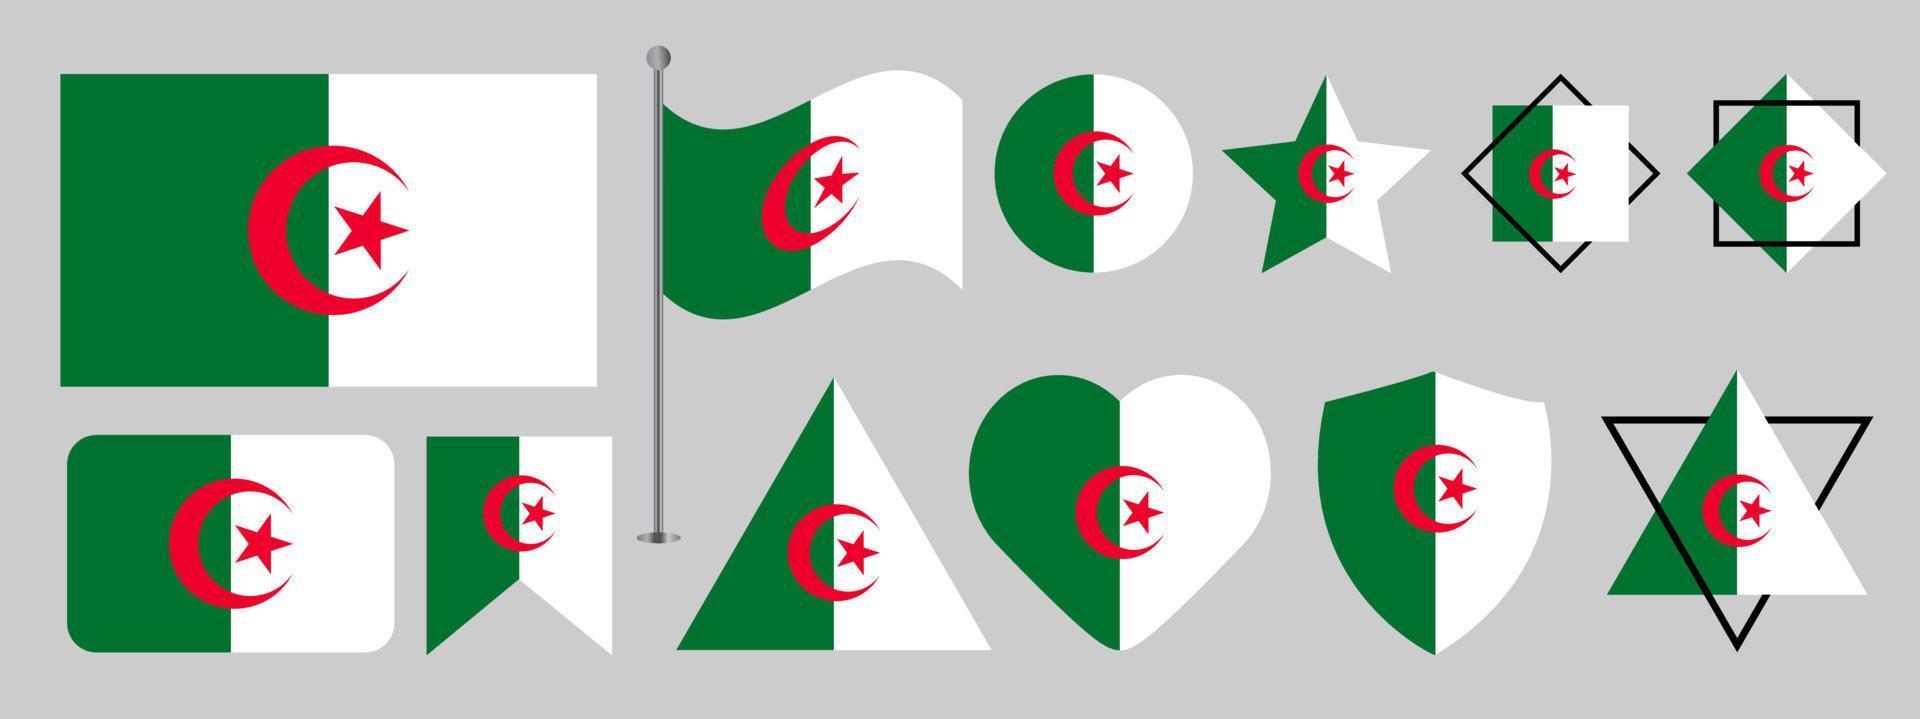 Algerien-Flaggendesign. algerien nationalflagge vektor design set. algerien flaggenvektorillustration